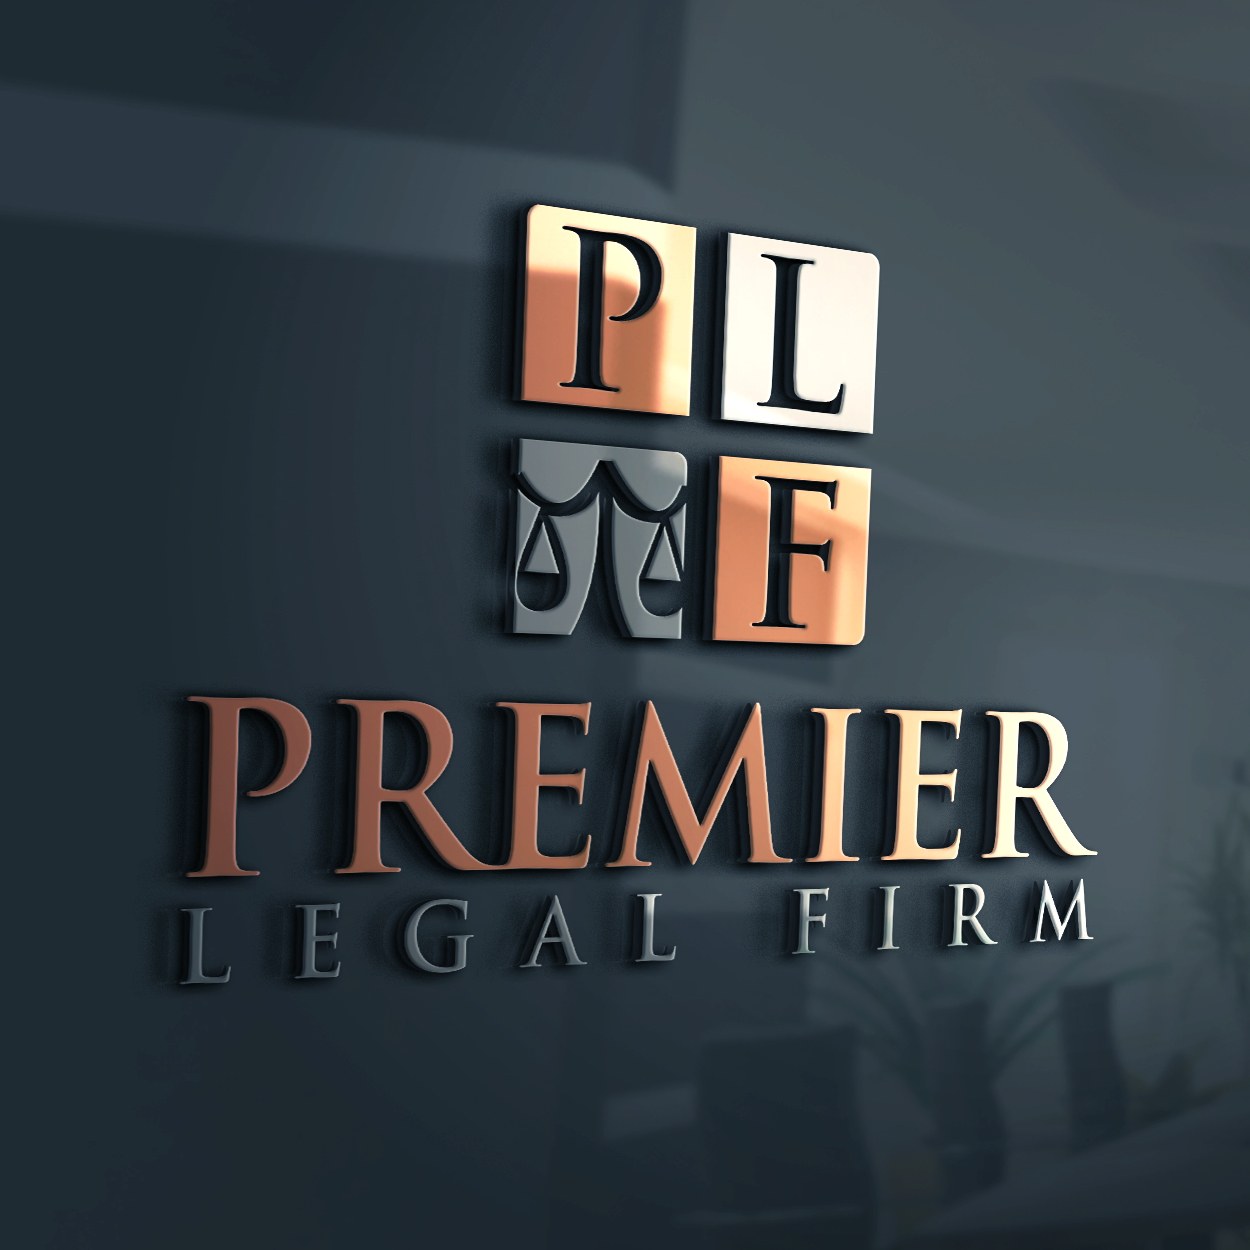  Premier Legal Firm 